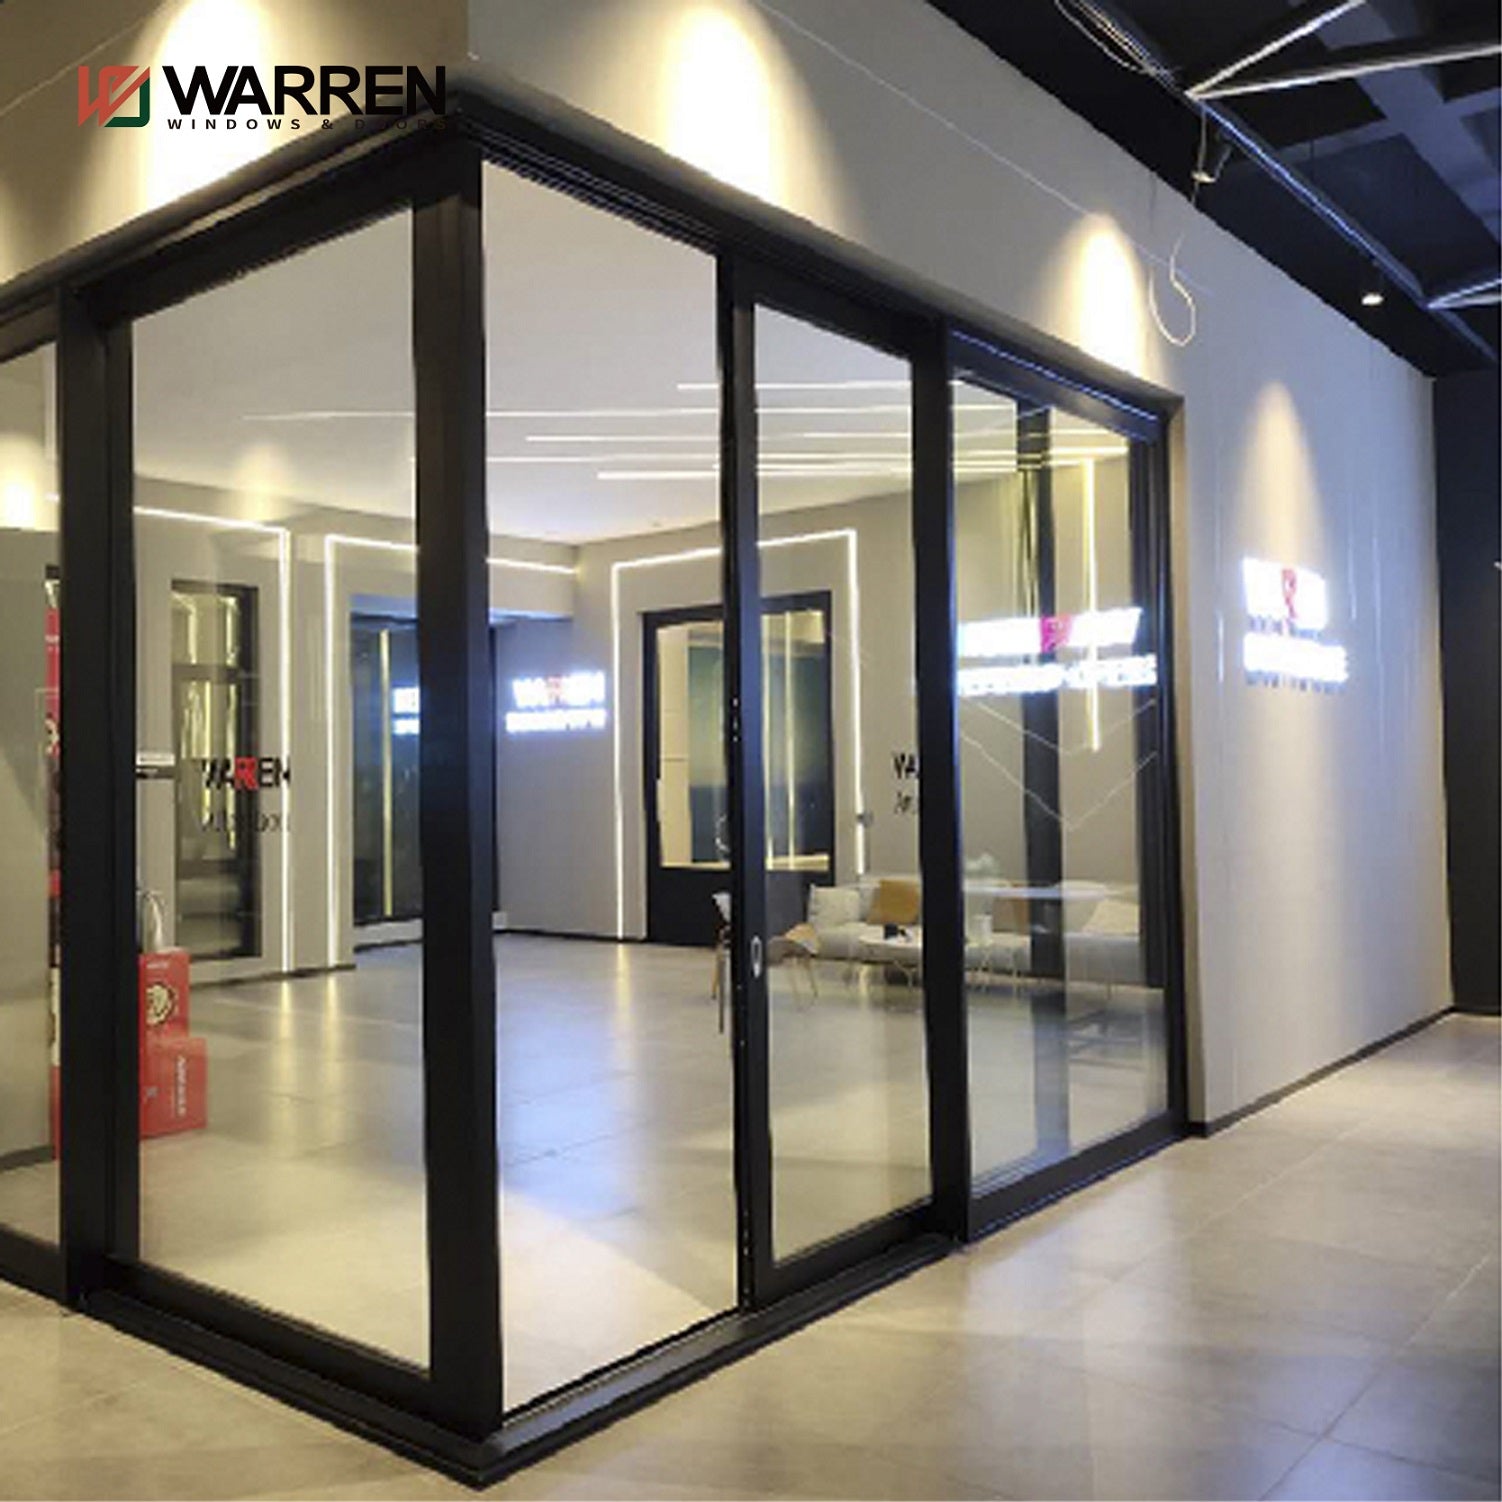 Warren Customized waterproof Soundproof aluminum folding doors tempered glass bifold patio door